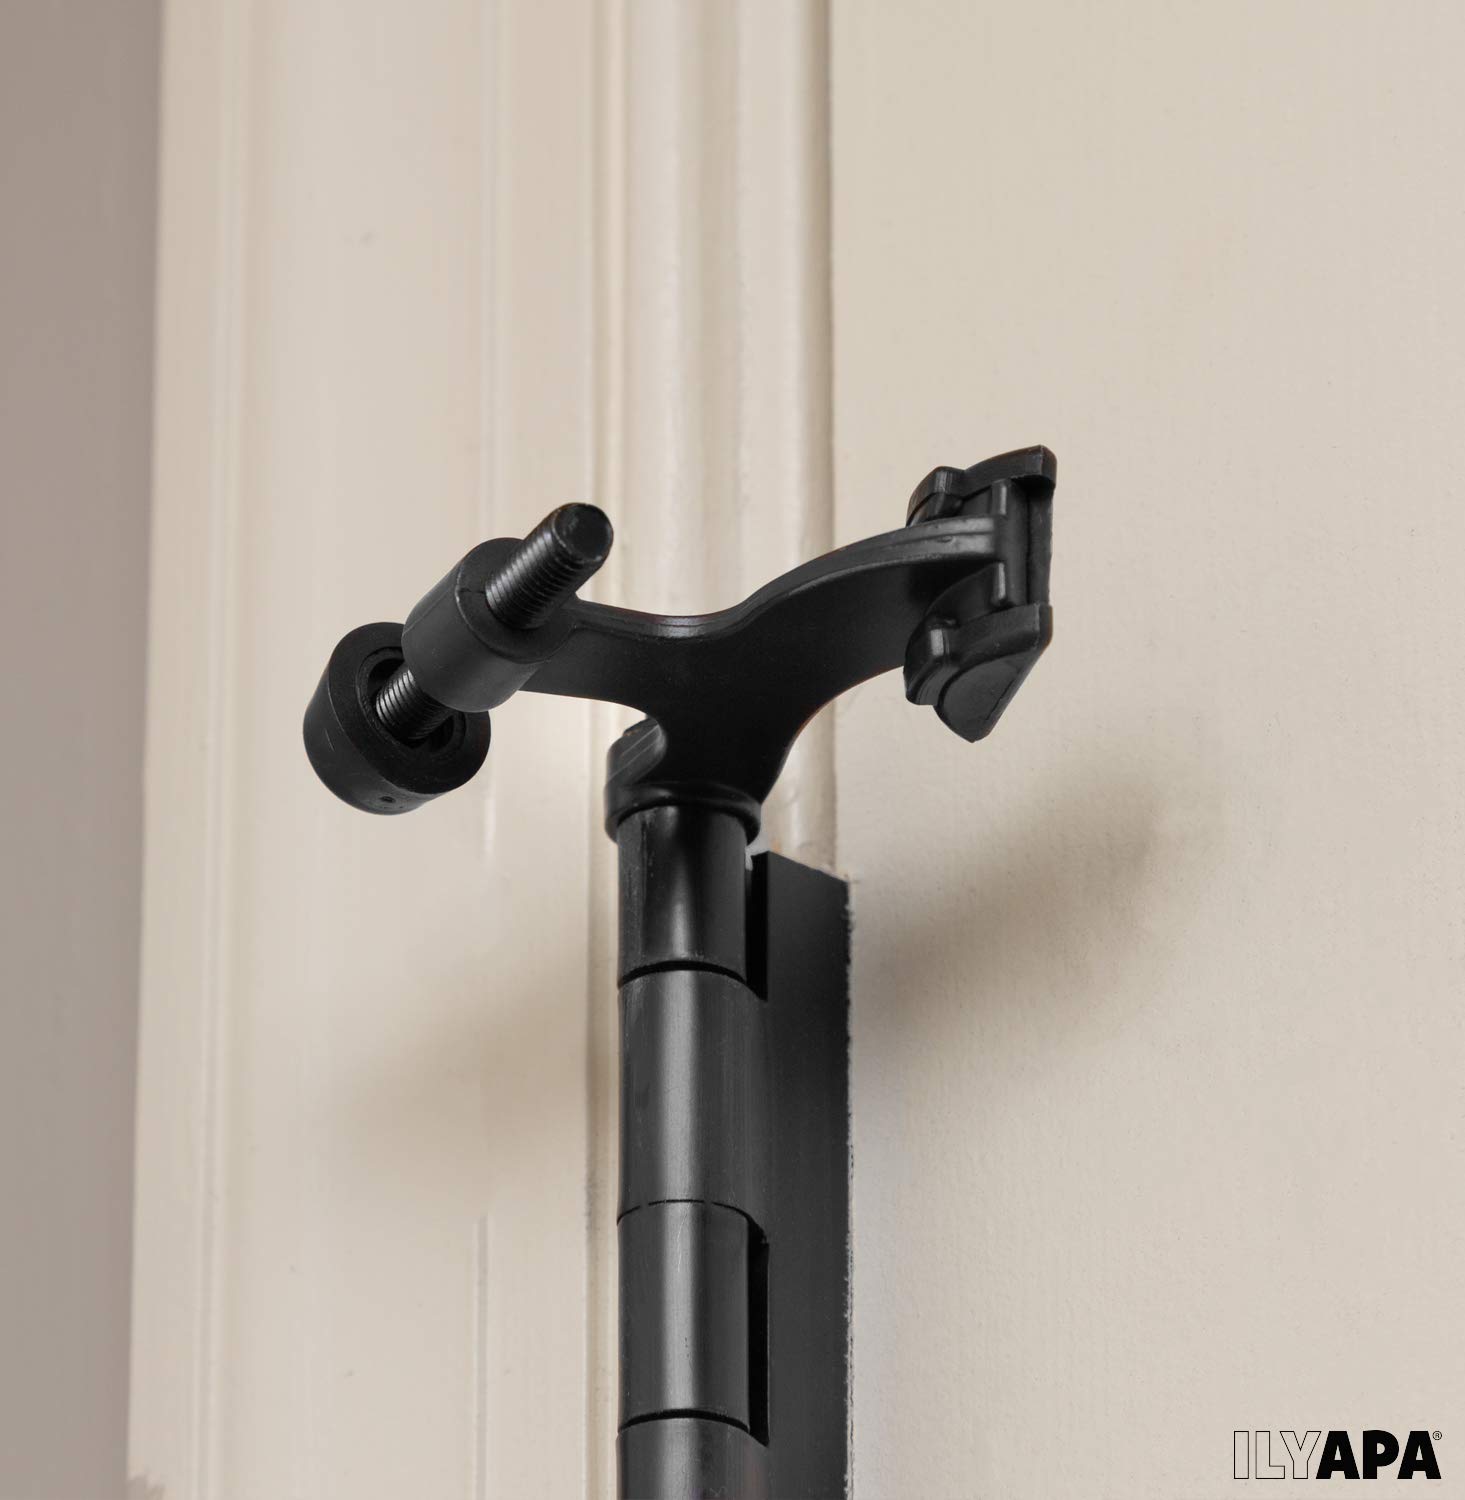 Ilyapa 6 Pack Matte Black Hinge Pin Door Stops - Heavy Duty Adjustable Stopper 2-1/2" x 1-3/4”, Door Stopper Wall Protector with Black Rubber Bumper Tips, Hinge Door Stop, Hinge Pin Door Stop 6 Pack